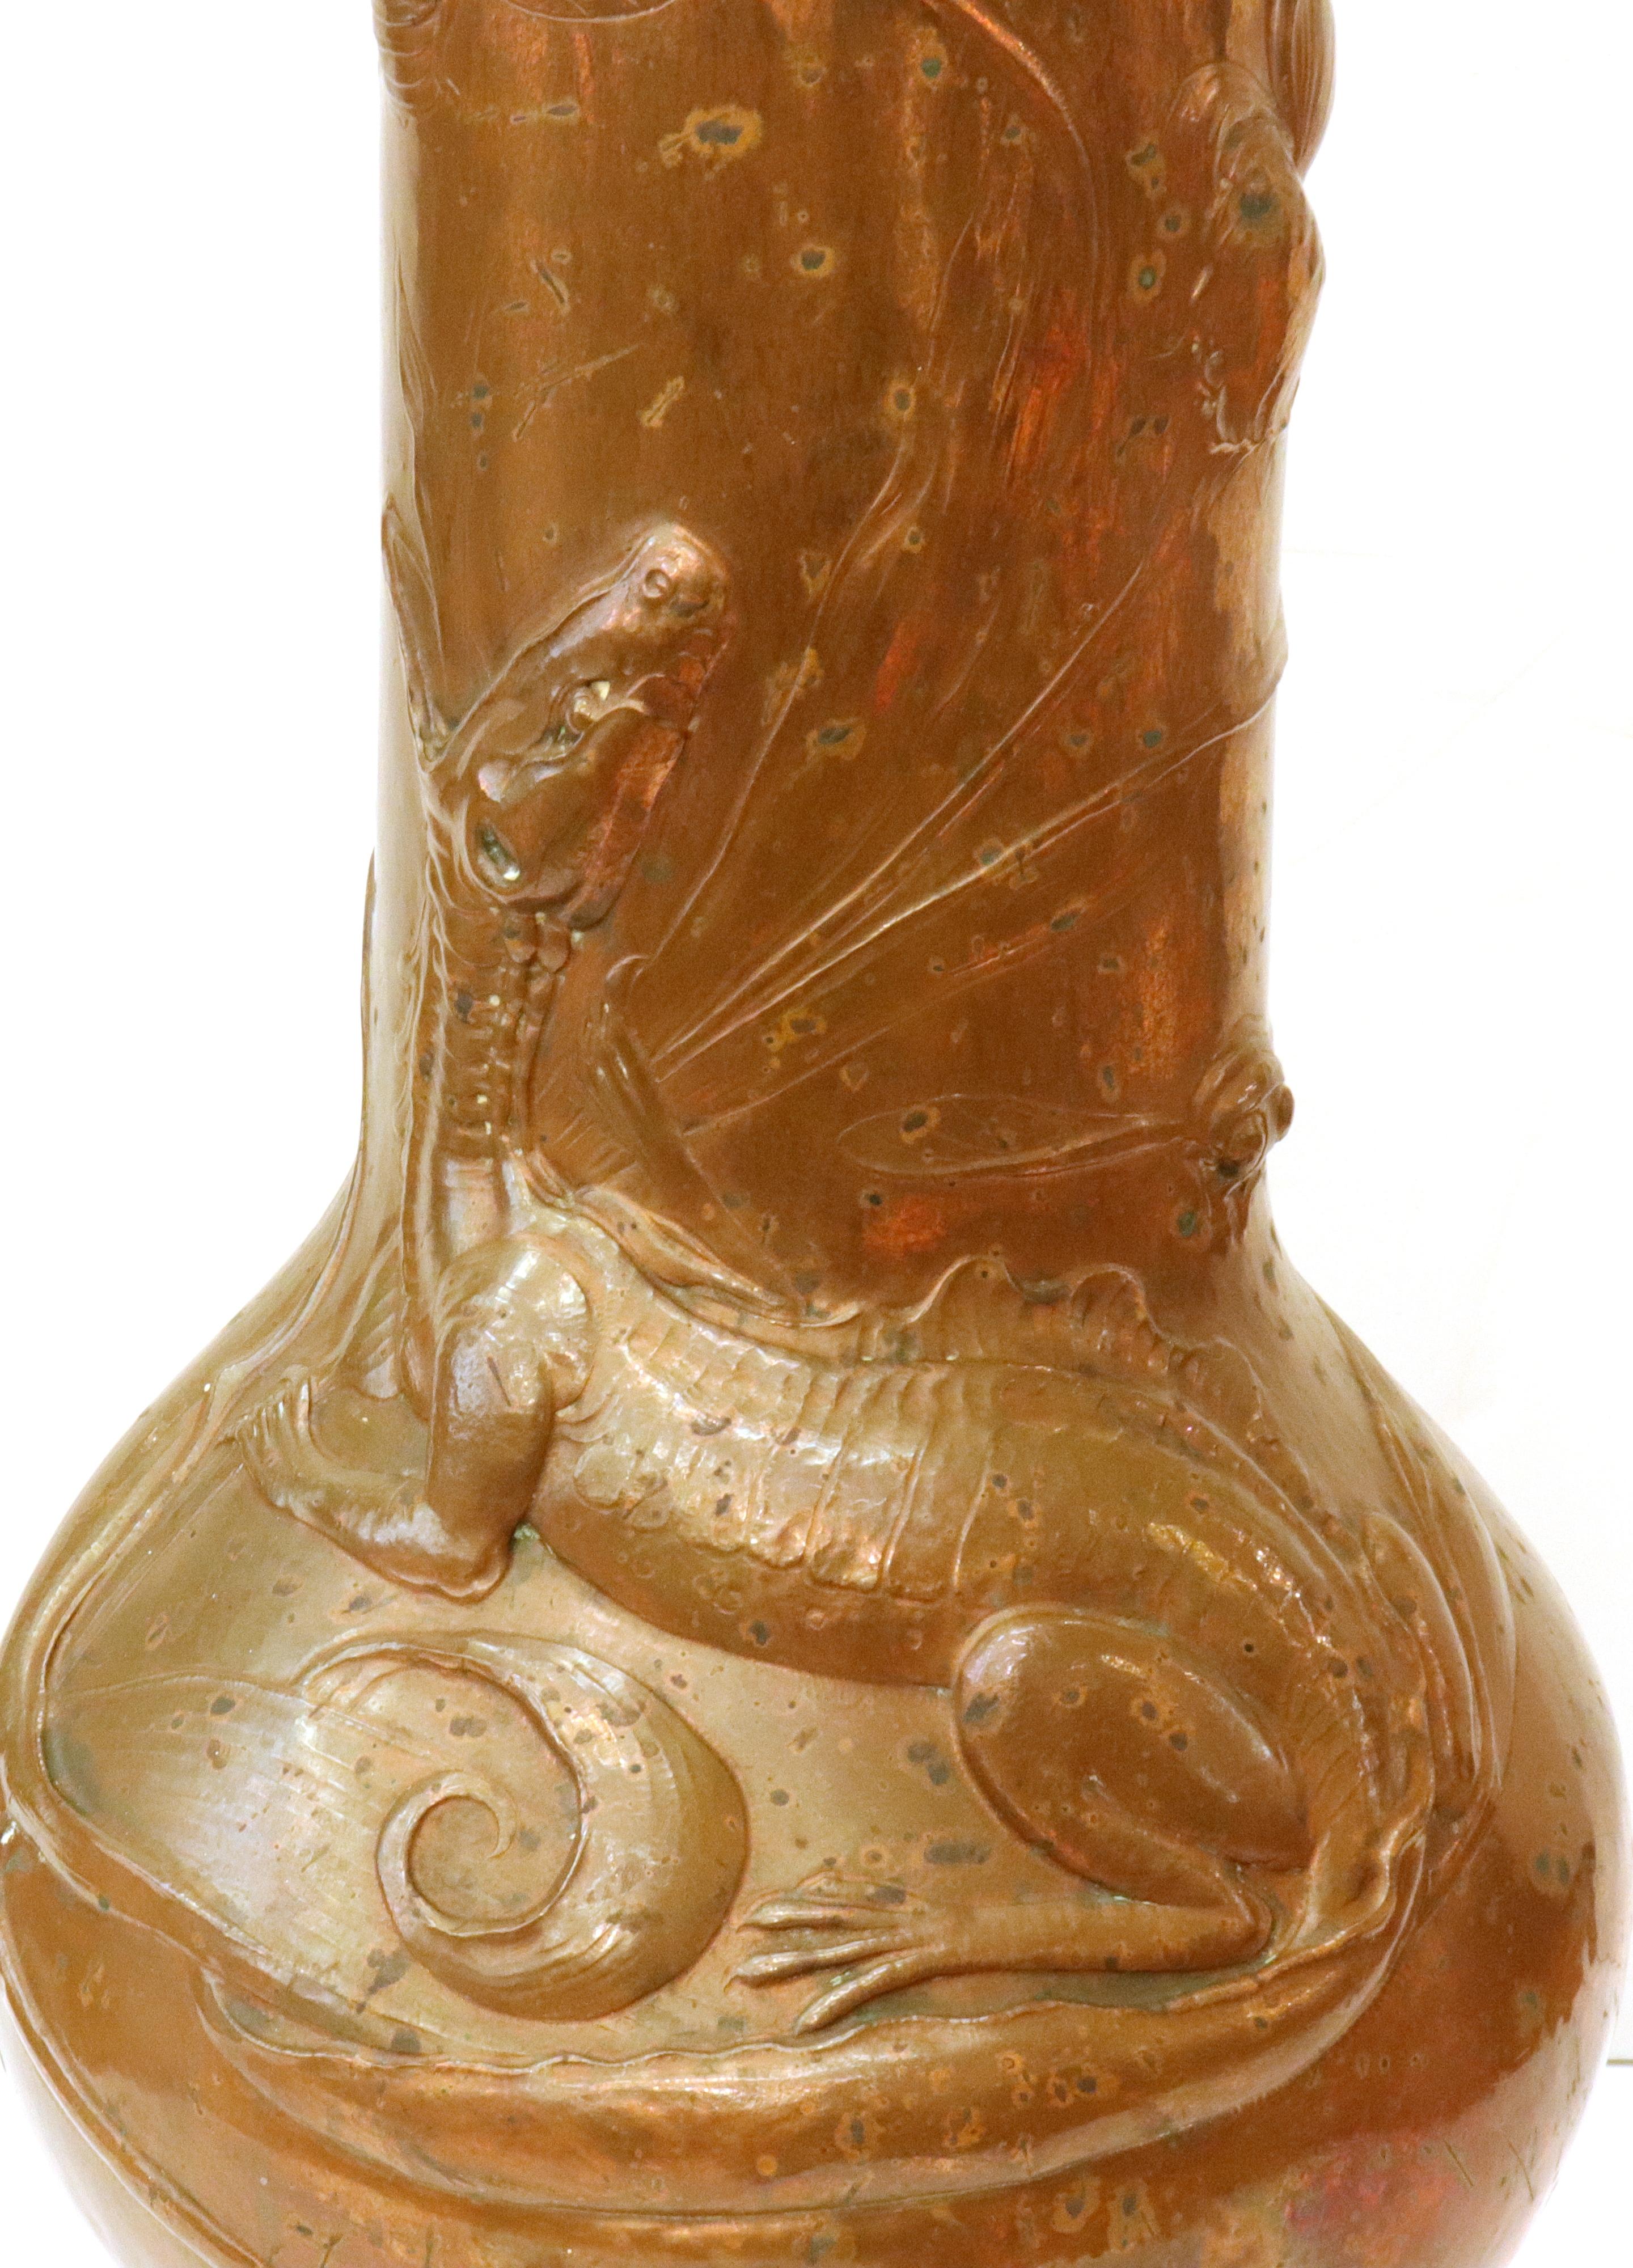 Vase monumental allemand Jugendstil conçu par Ludwig Karl Maria Vierthaler et réalisé en cuivre repoussé avec un bord en laiton. La pièce comporte un grand lézard sur le devant ainsi qu'une libellule et quelques éléments floraux. Fabriquée en